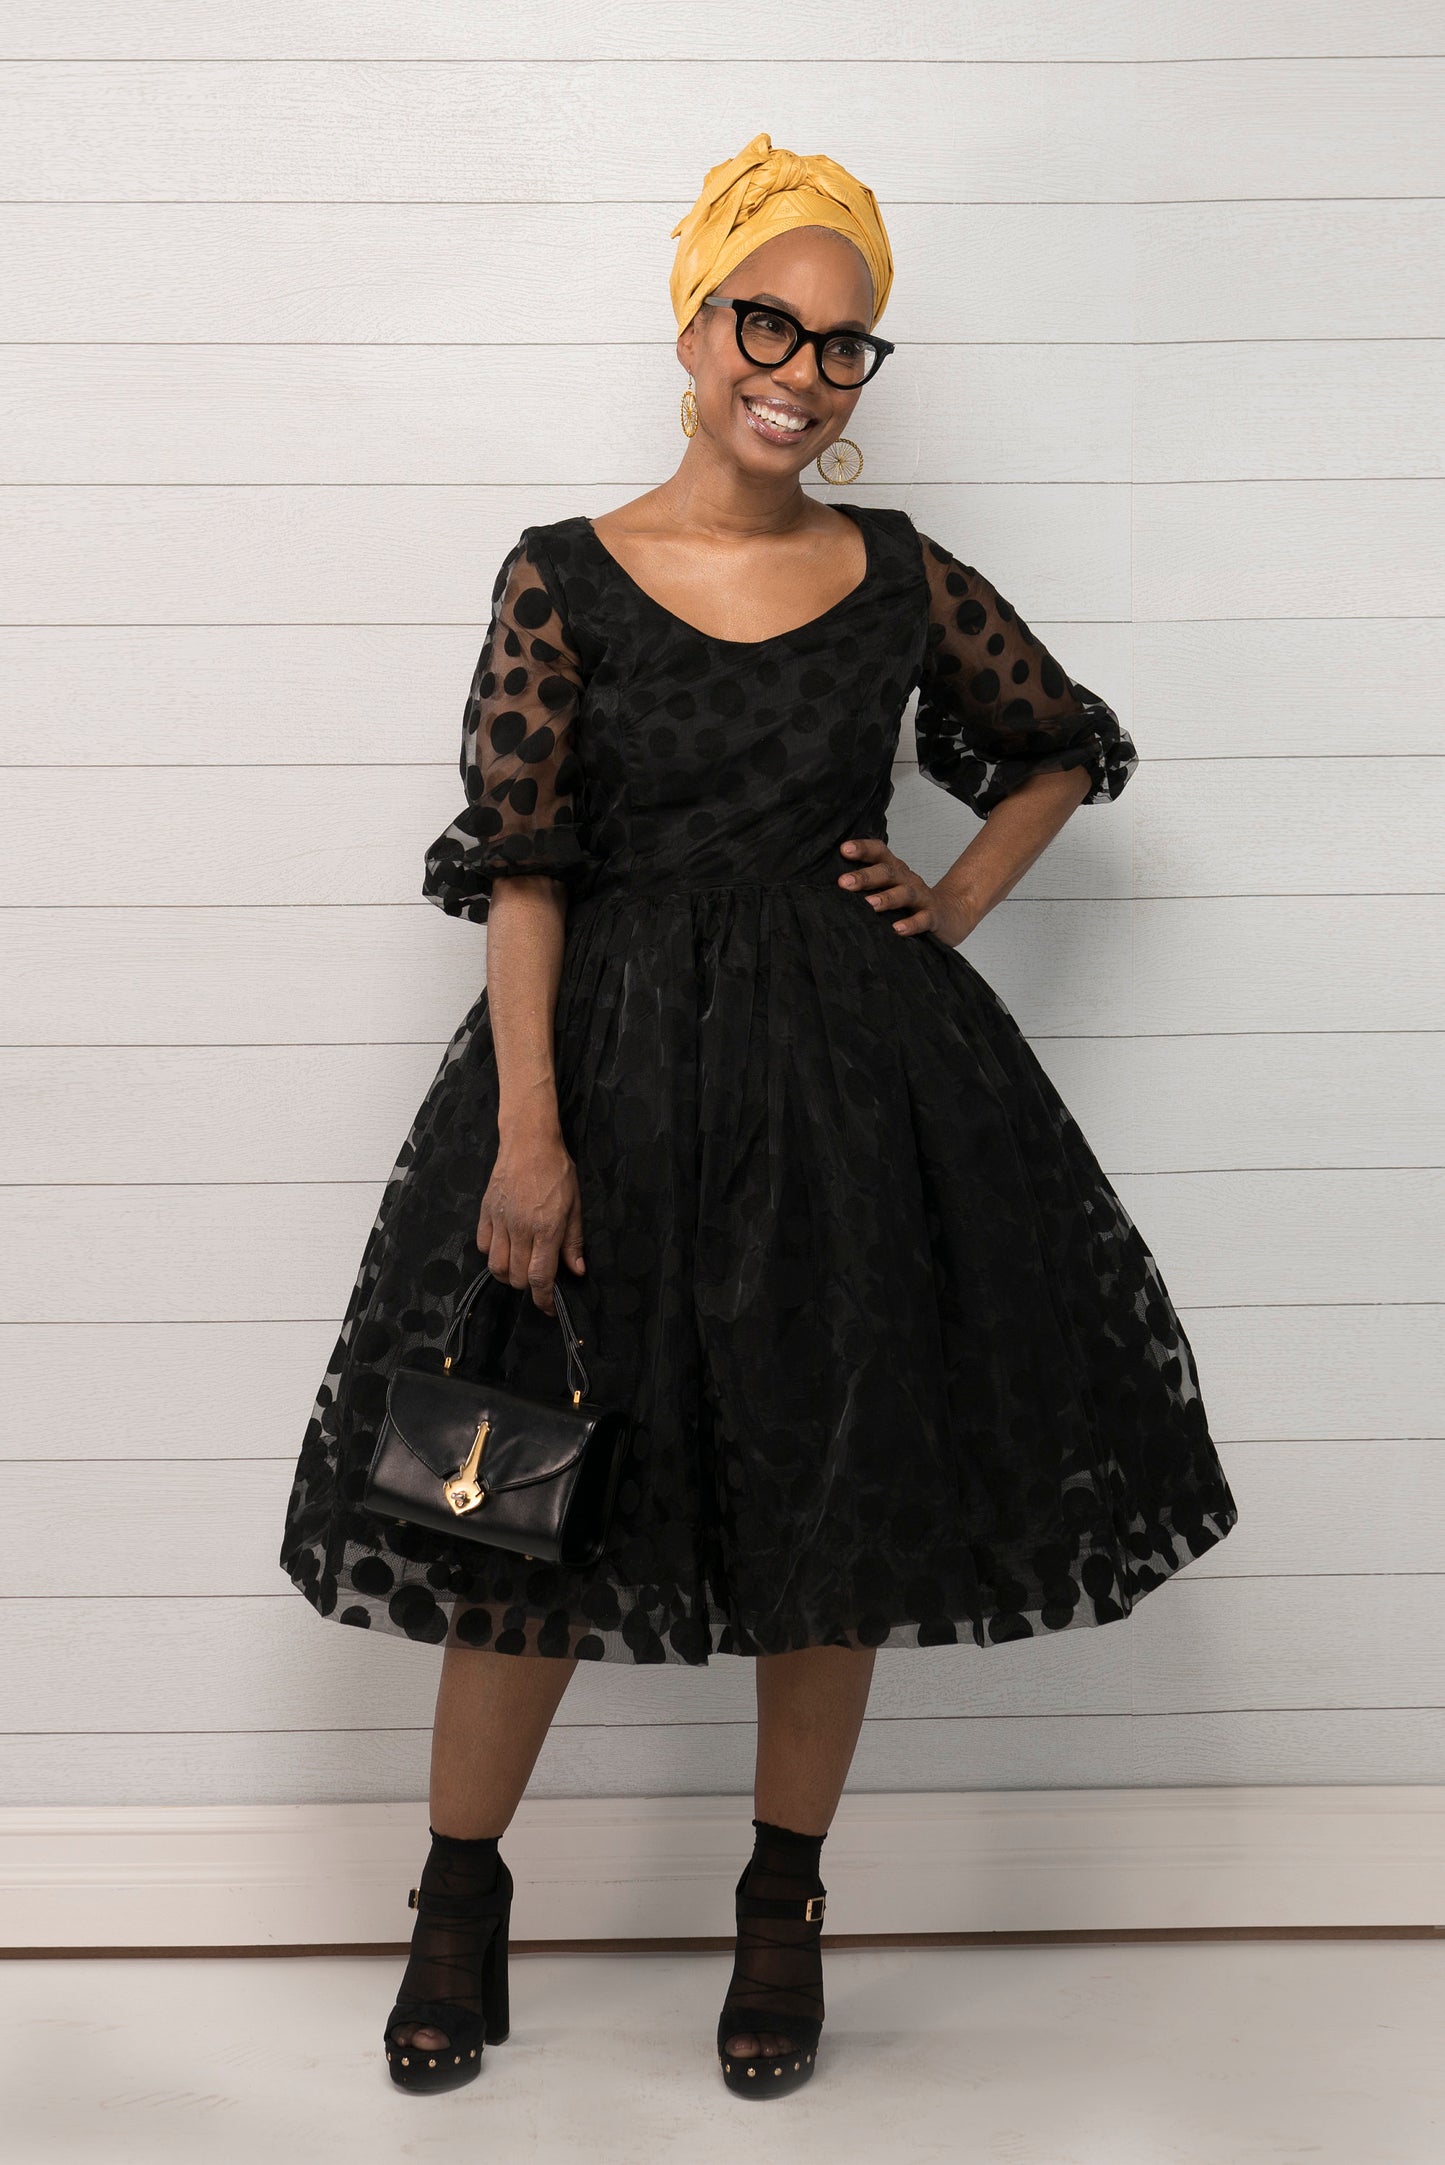 NEYUSI Belle Dress, Black Organza Belle Dress, 1950 style Scoop neck Dress